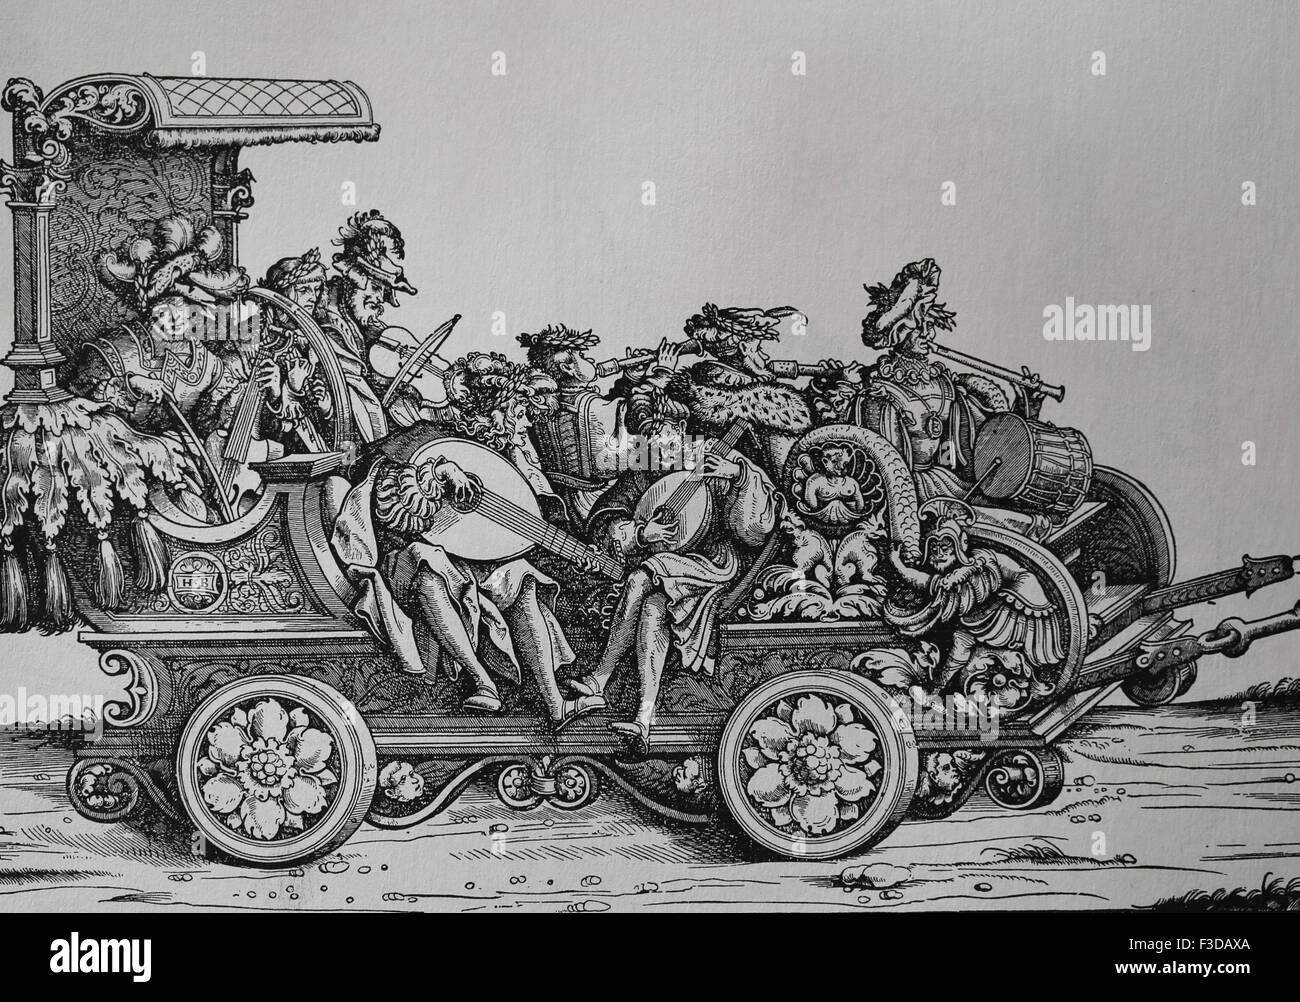 L'Europe. L'Italie. Chariot avec des musiciens jouant divers instruments de musique. La gravure. Banque D'Images